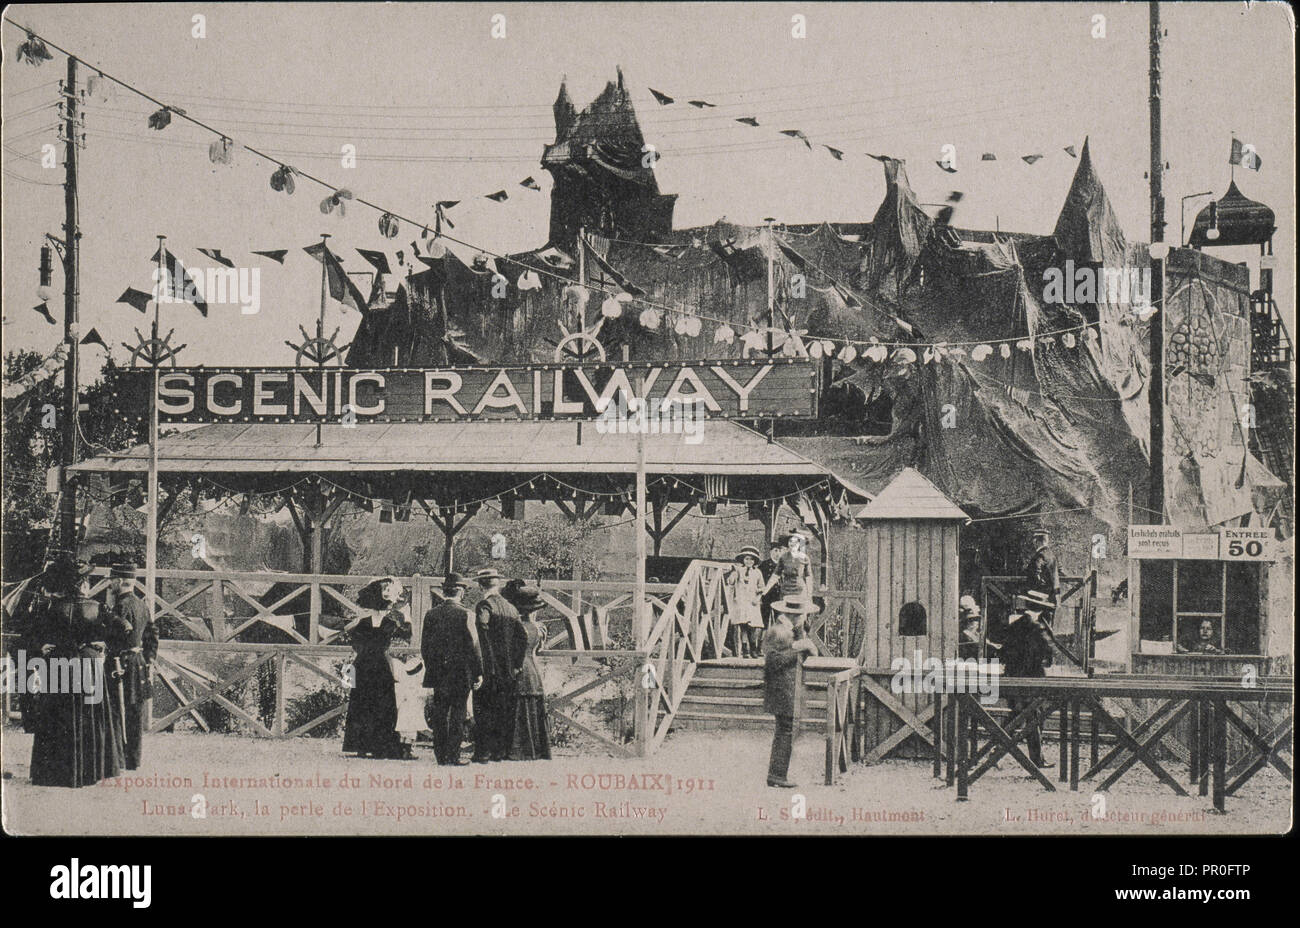 Luna Park, la perle de l'Exposition, le Scénic Railway, Laffineur-Samin, Collotype, 1911, Exposition Internationale du Nord Stock Photo